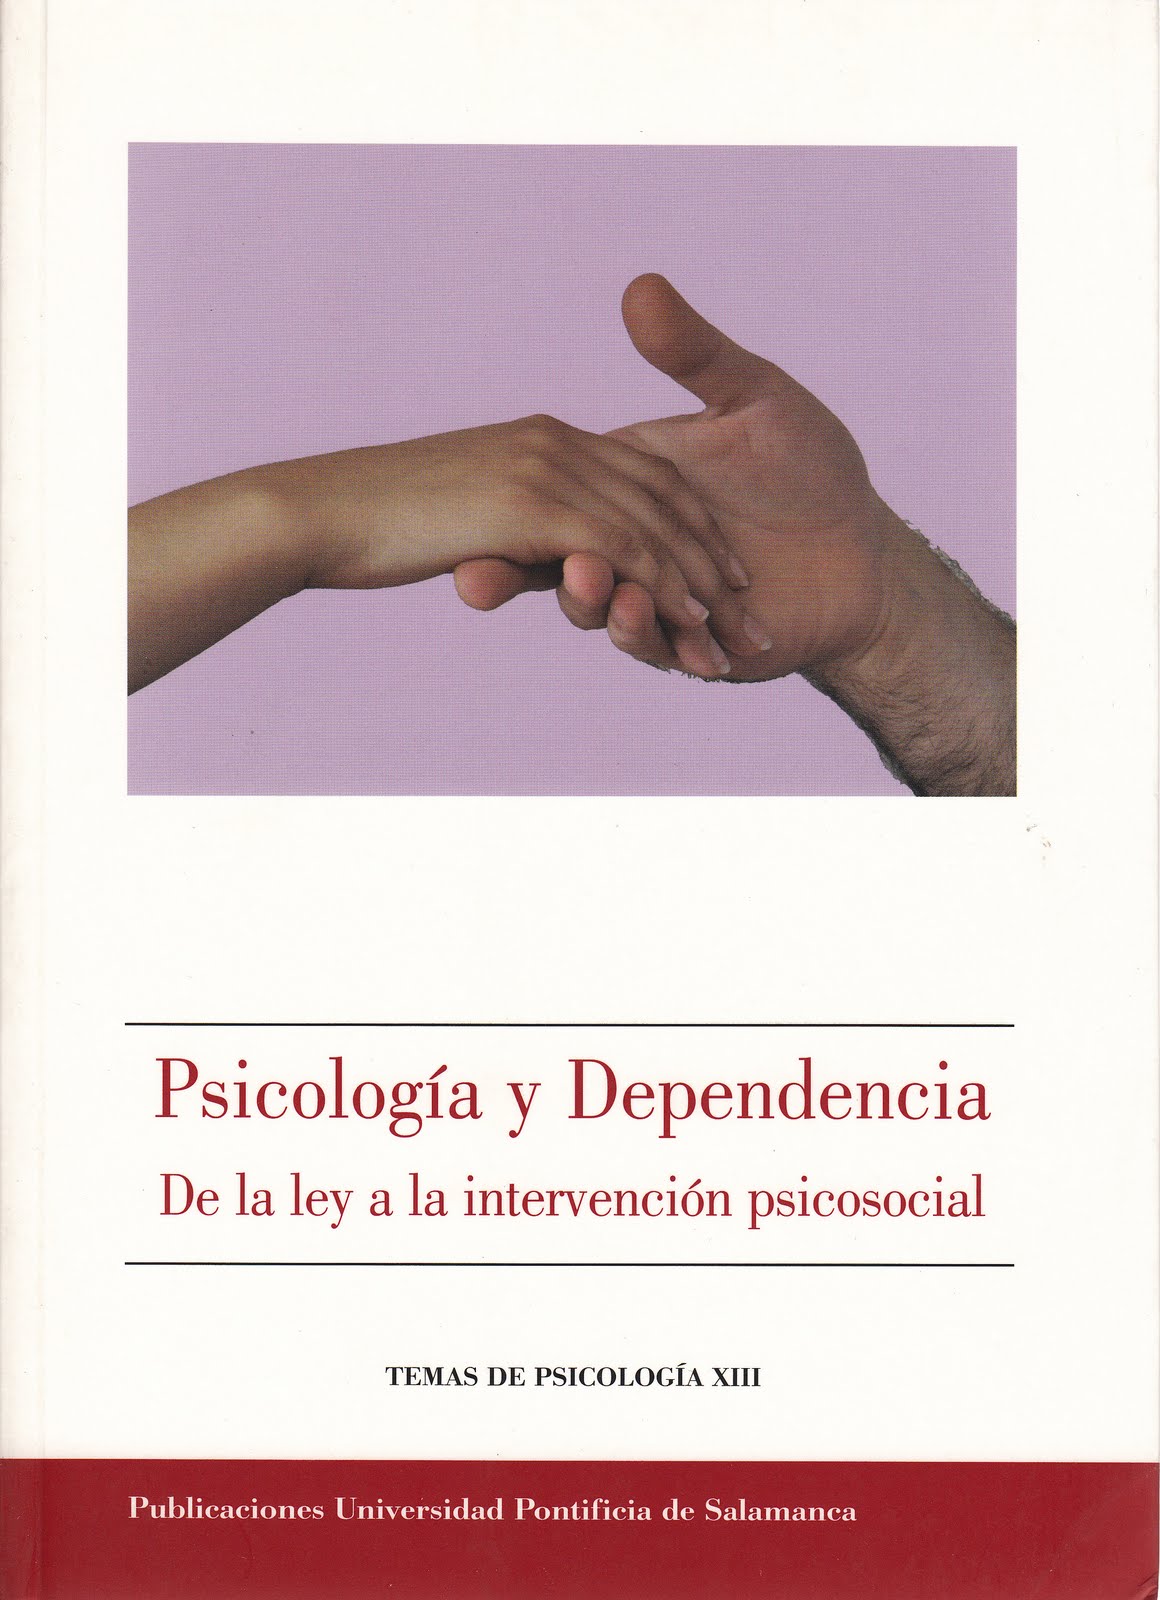 Imagen de portada del libro Psicología y dependencia